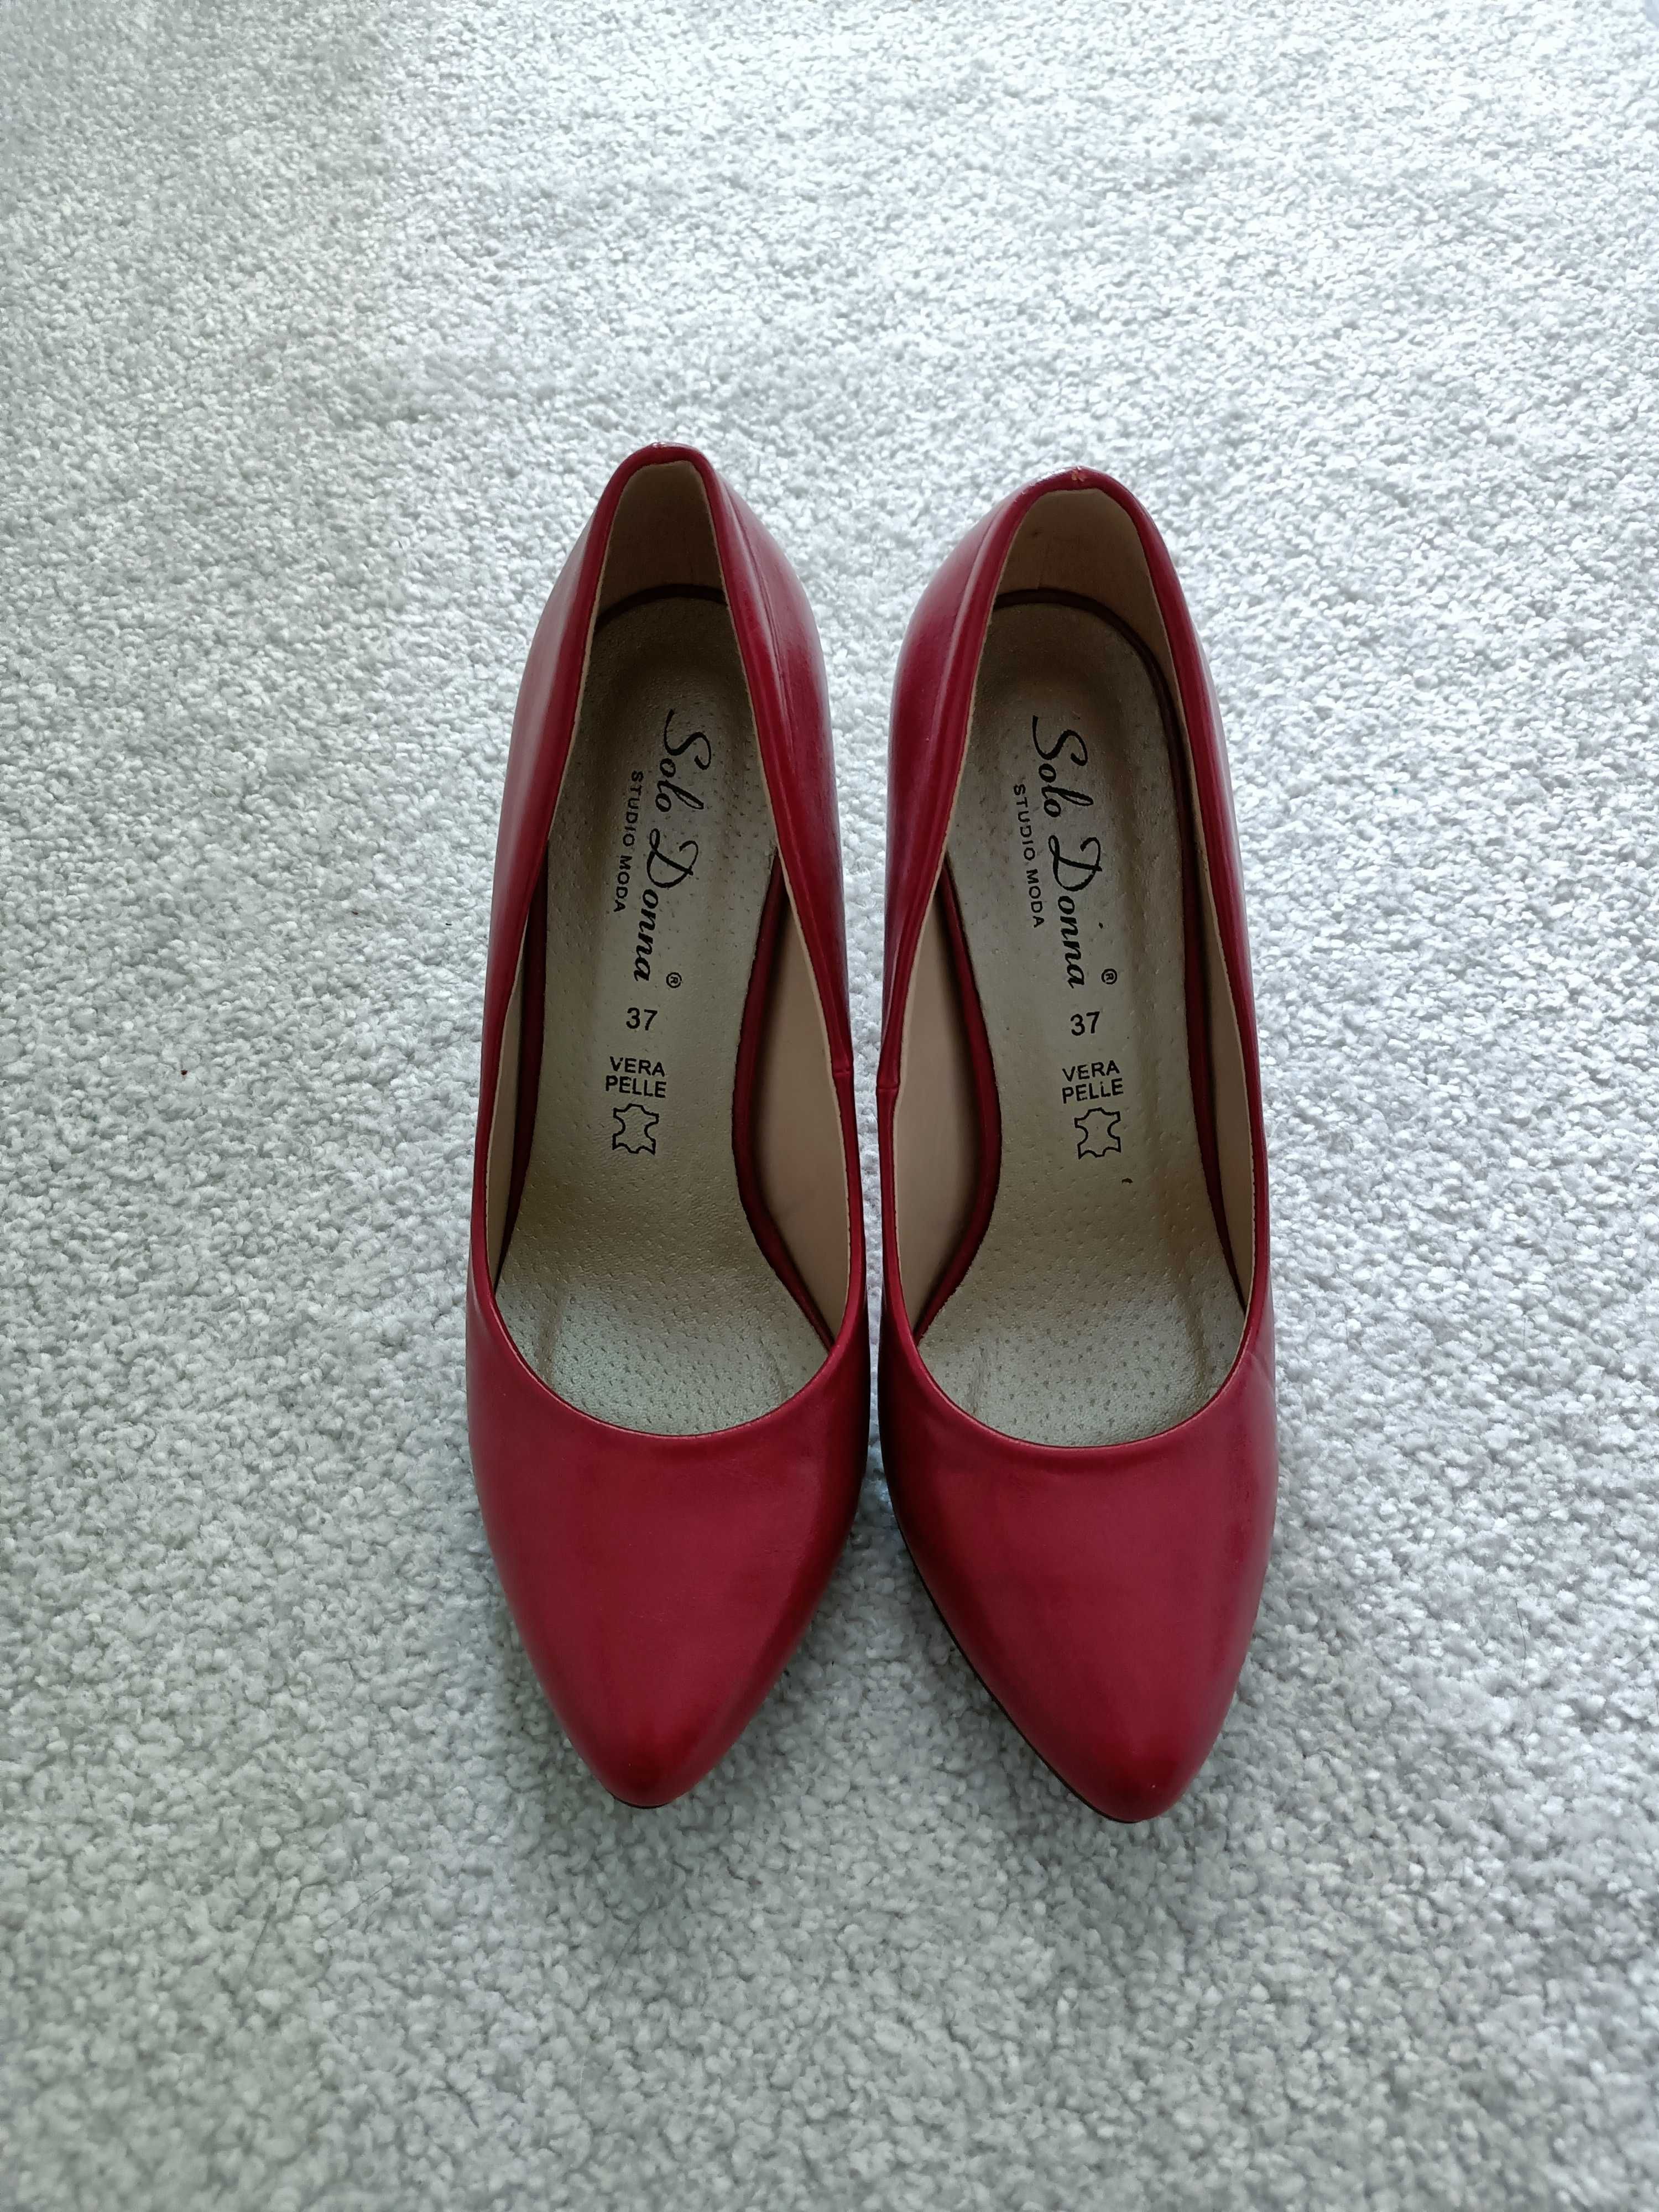 Pantofi rosii eleganti 37